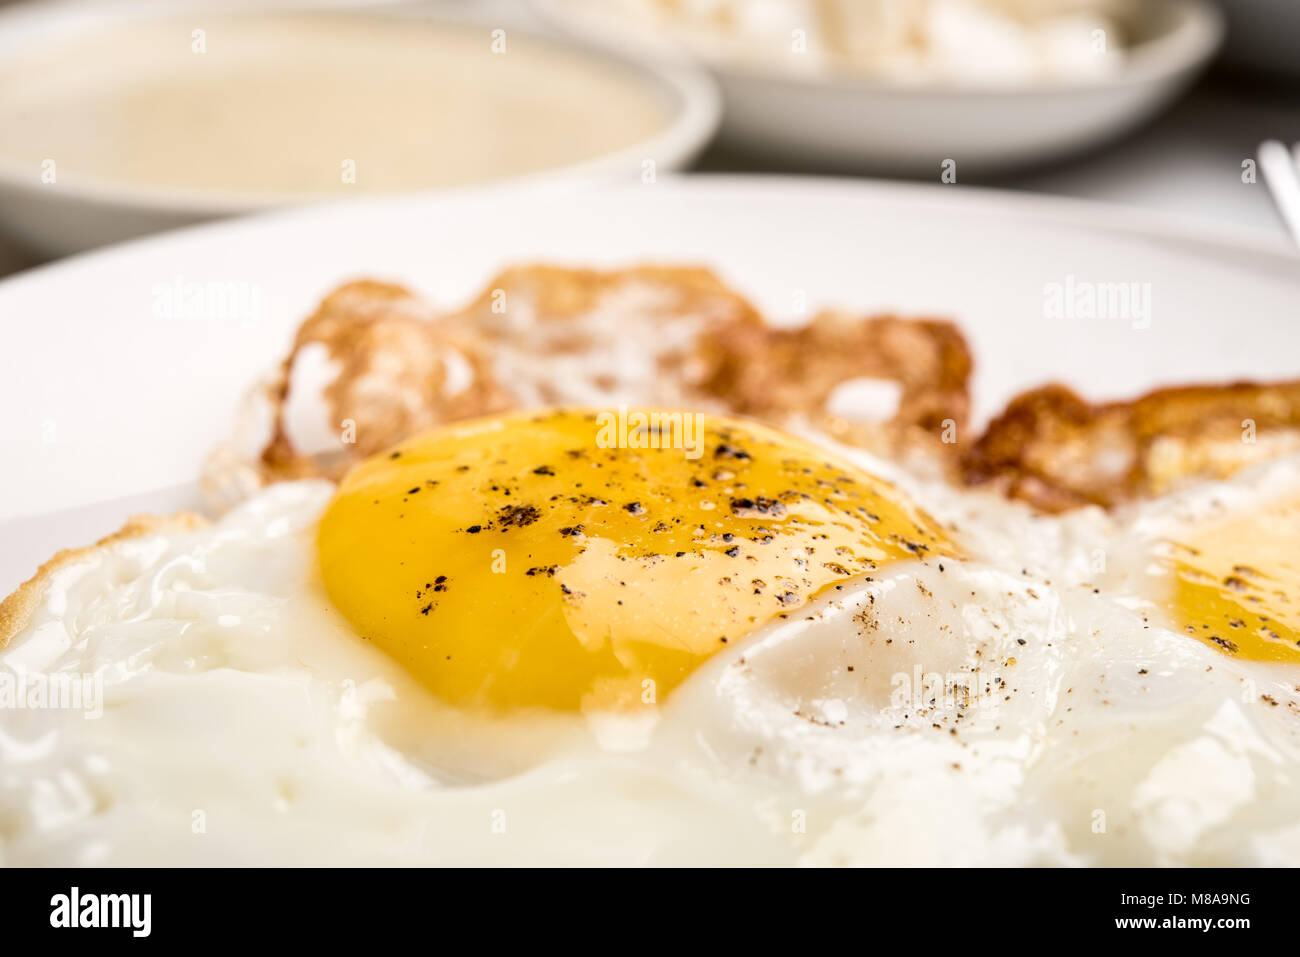 Tradizionale colazione israeliana con due uova fritte, formaggio giallo, insalata, un rotolo di fresco e una tazza di cappuccino. Primo piano sulle uova fritte Foto Stock